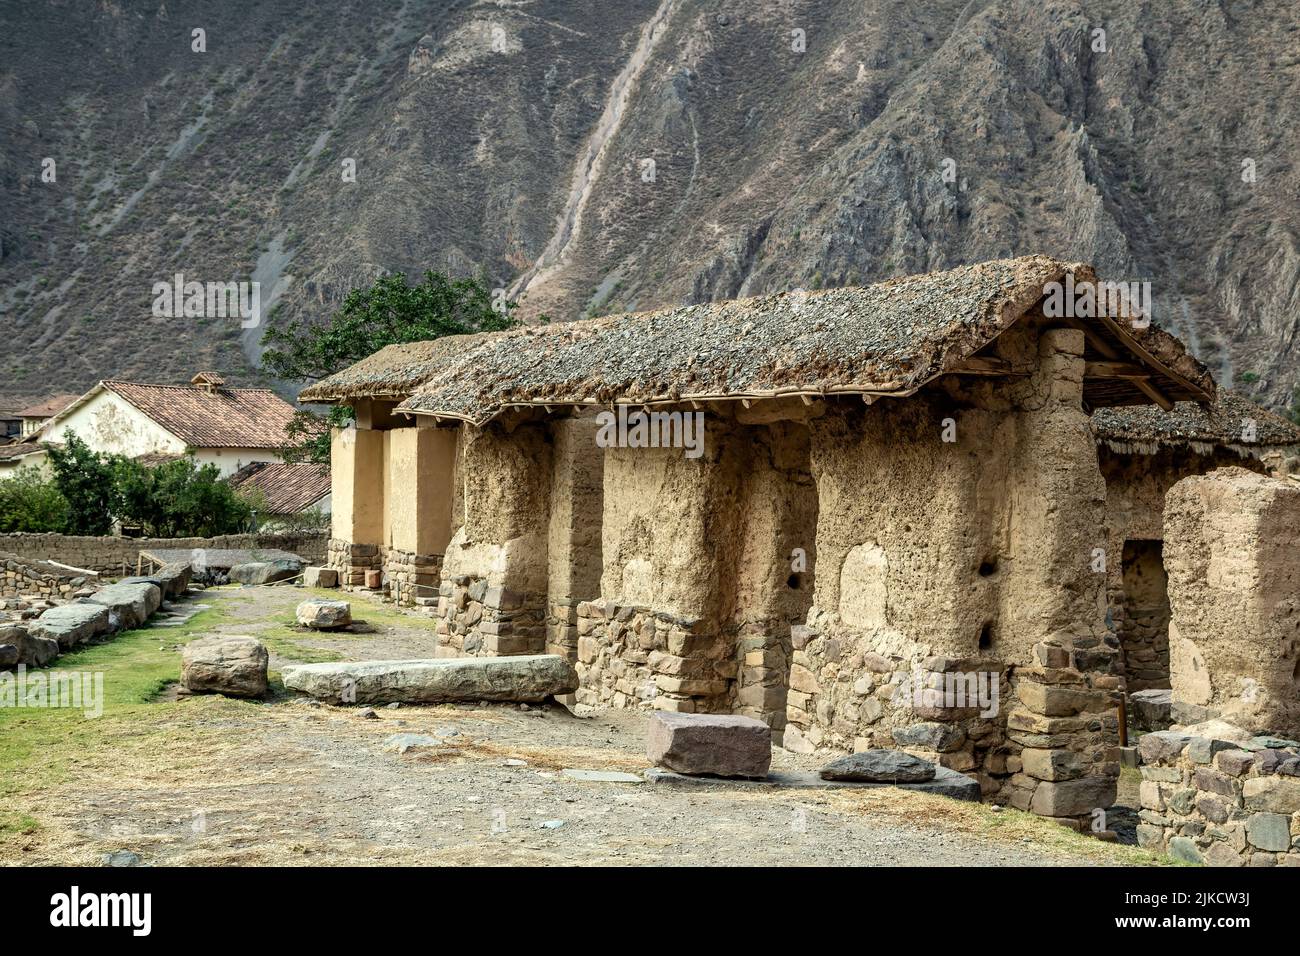 Estructuras cubiertas de paja, ruinas incas de Ollantaytambo, Ollantaytambo, Urubamba, Cusco, Perú Foto de stock